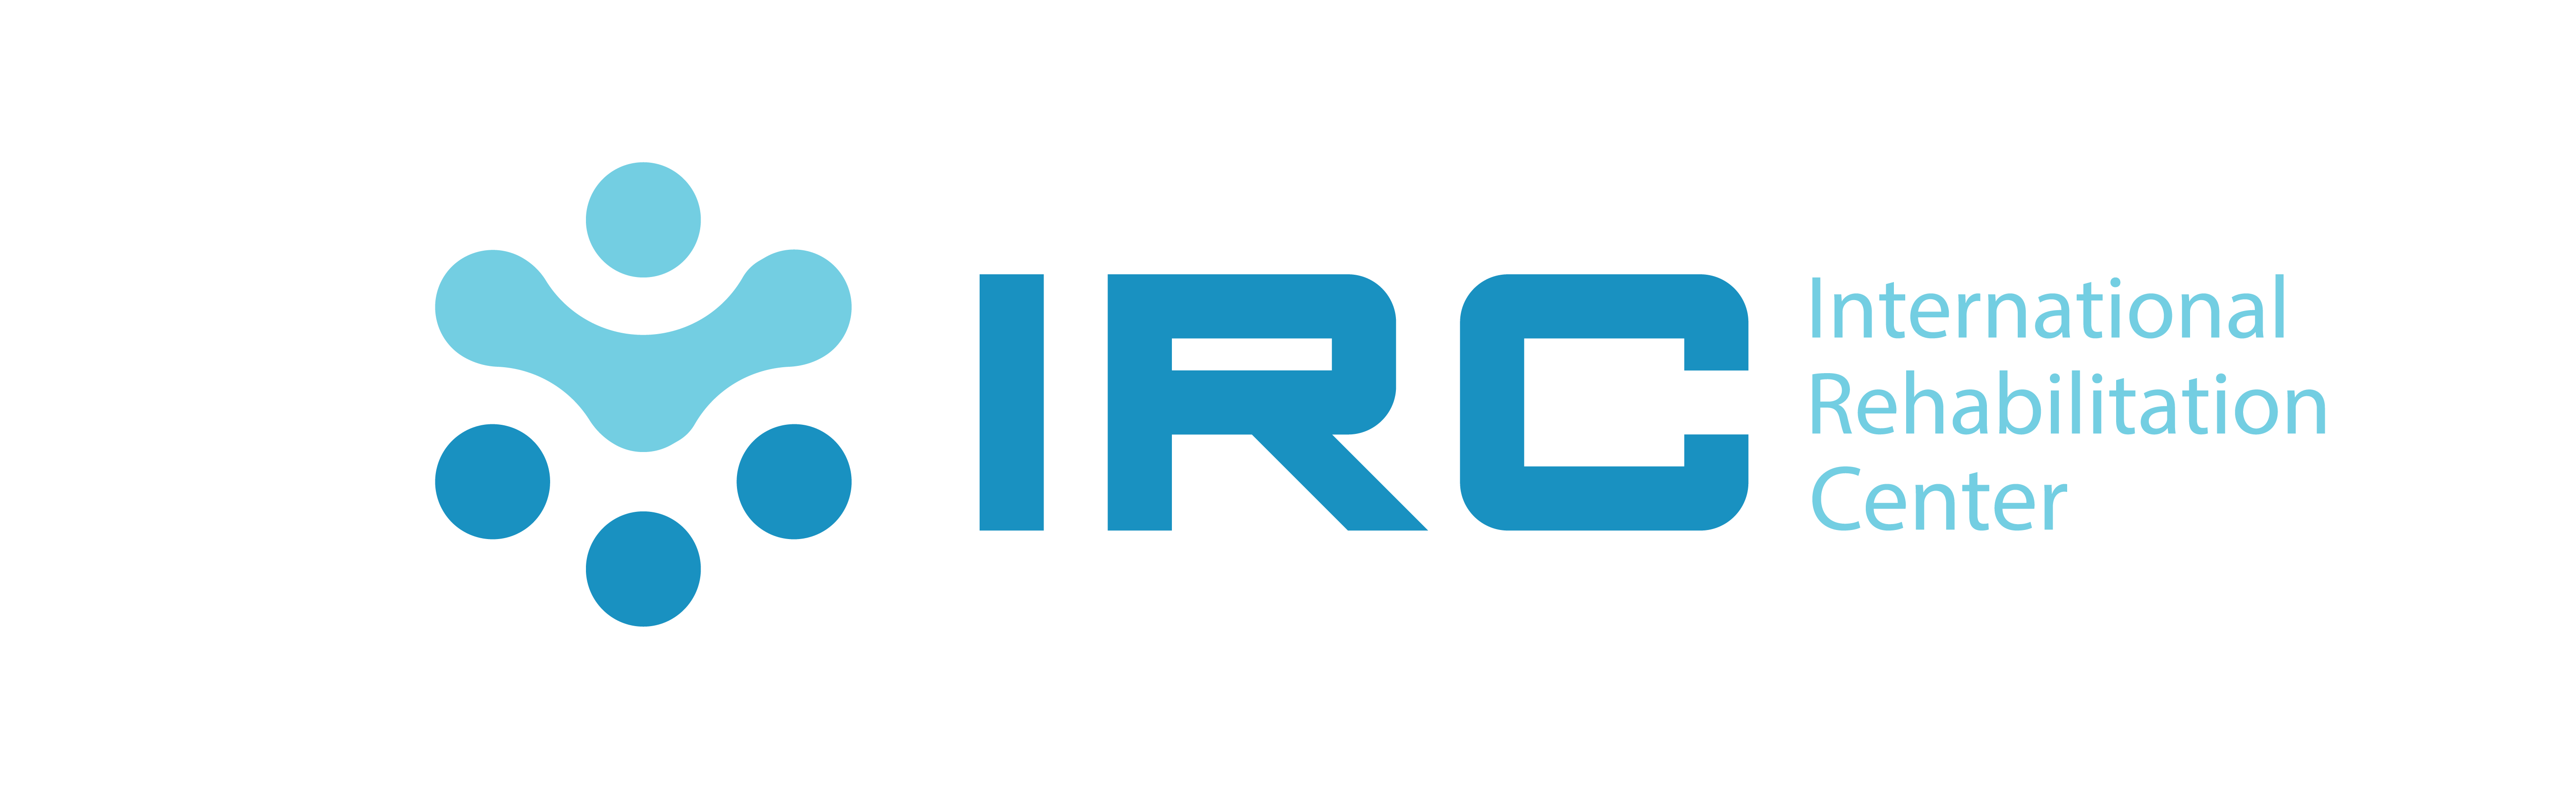 Logo IRC